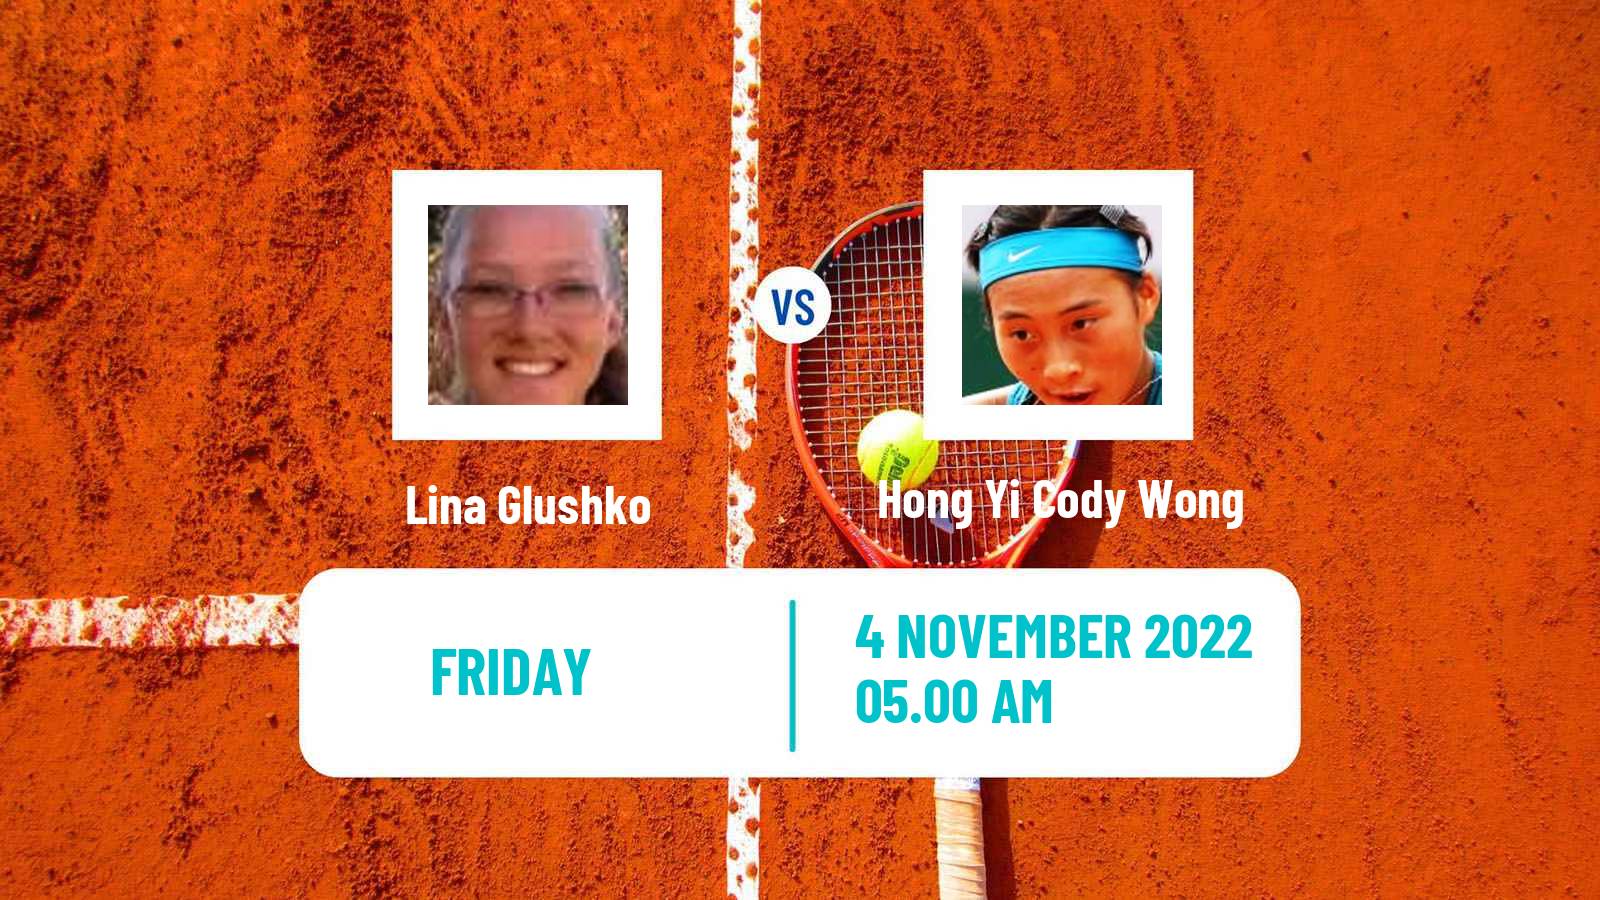 Tennis ITF Tournaments Lina Glushko - Hong Yi Cody Wong